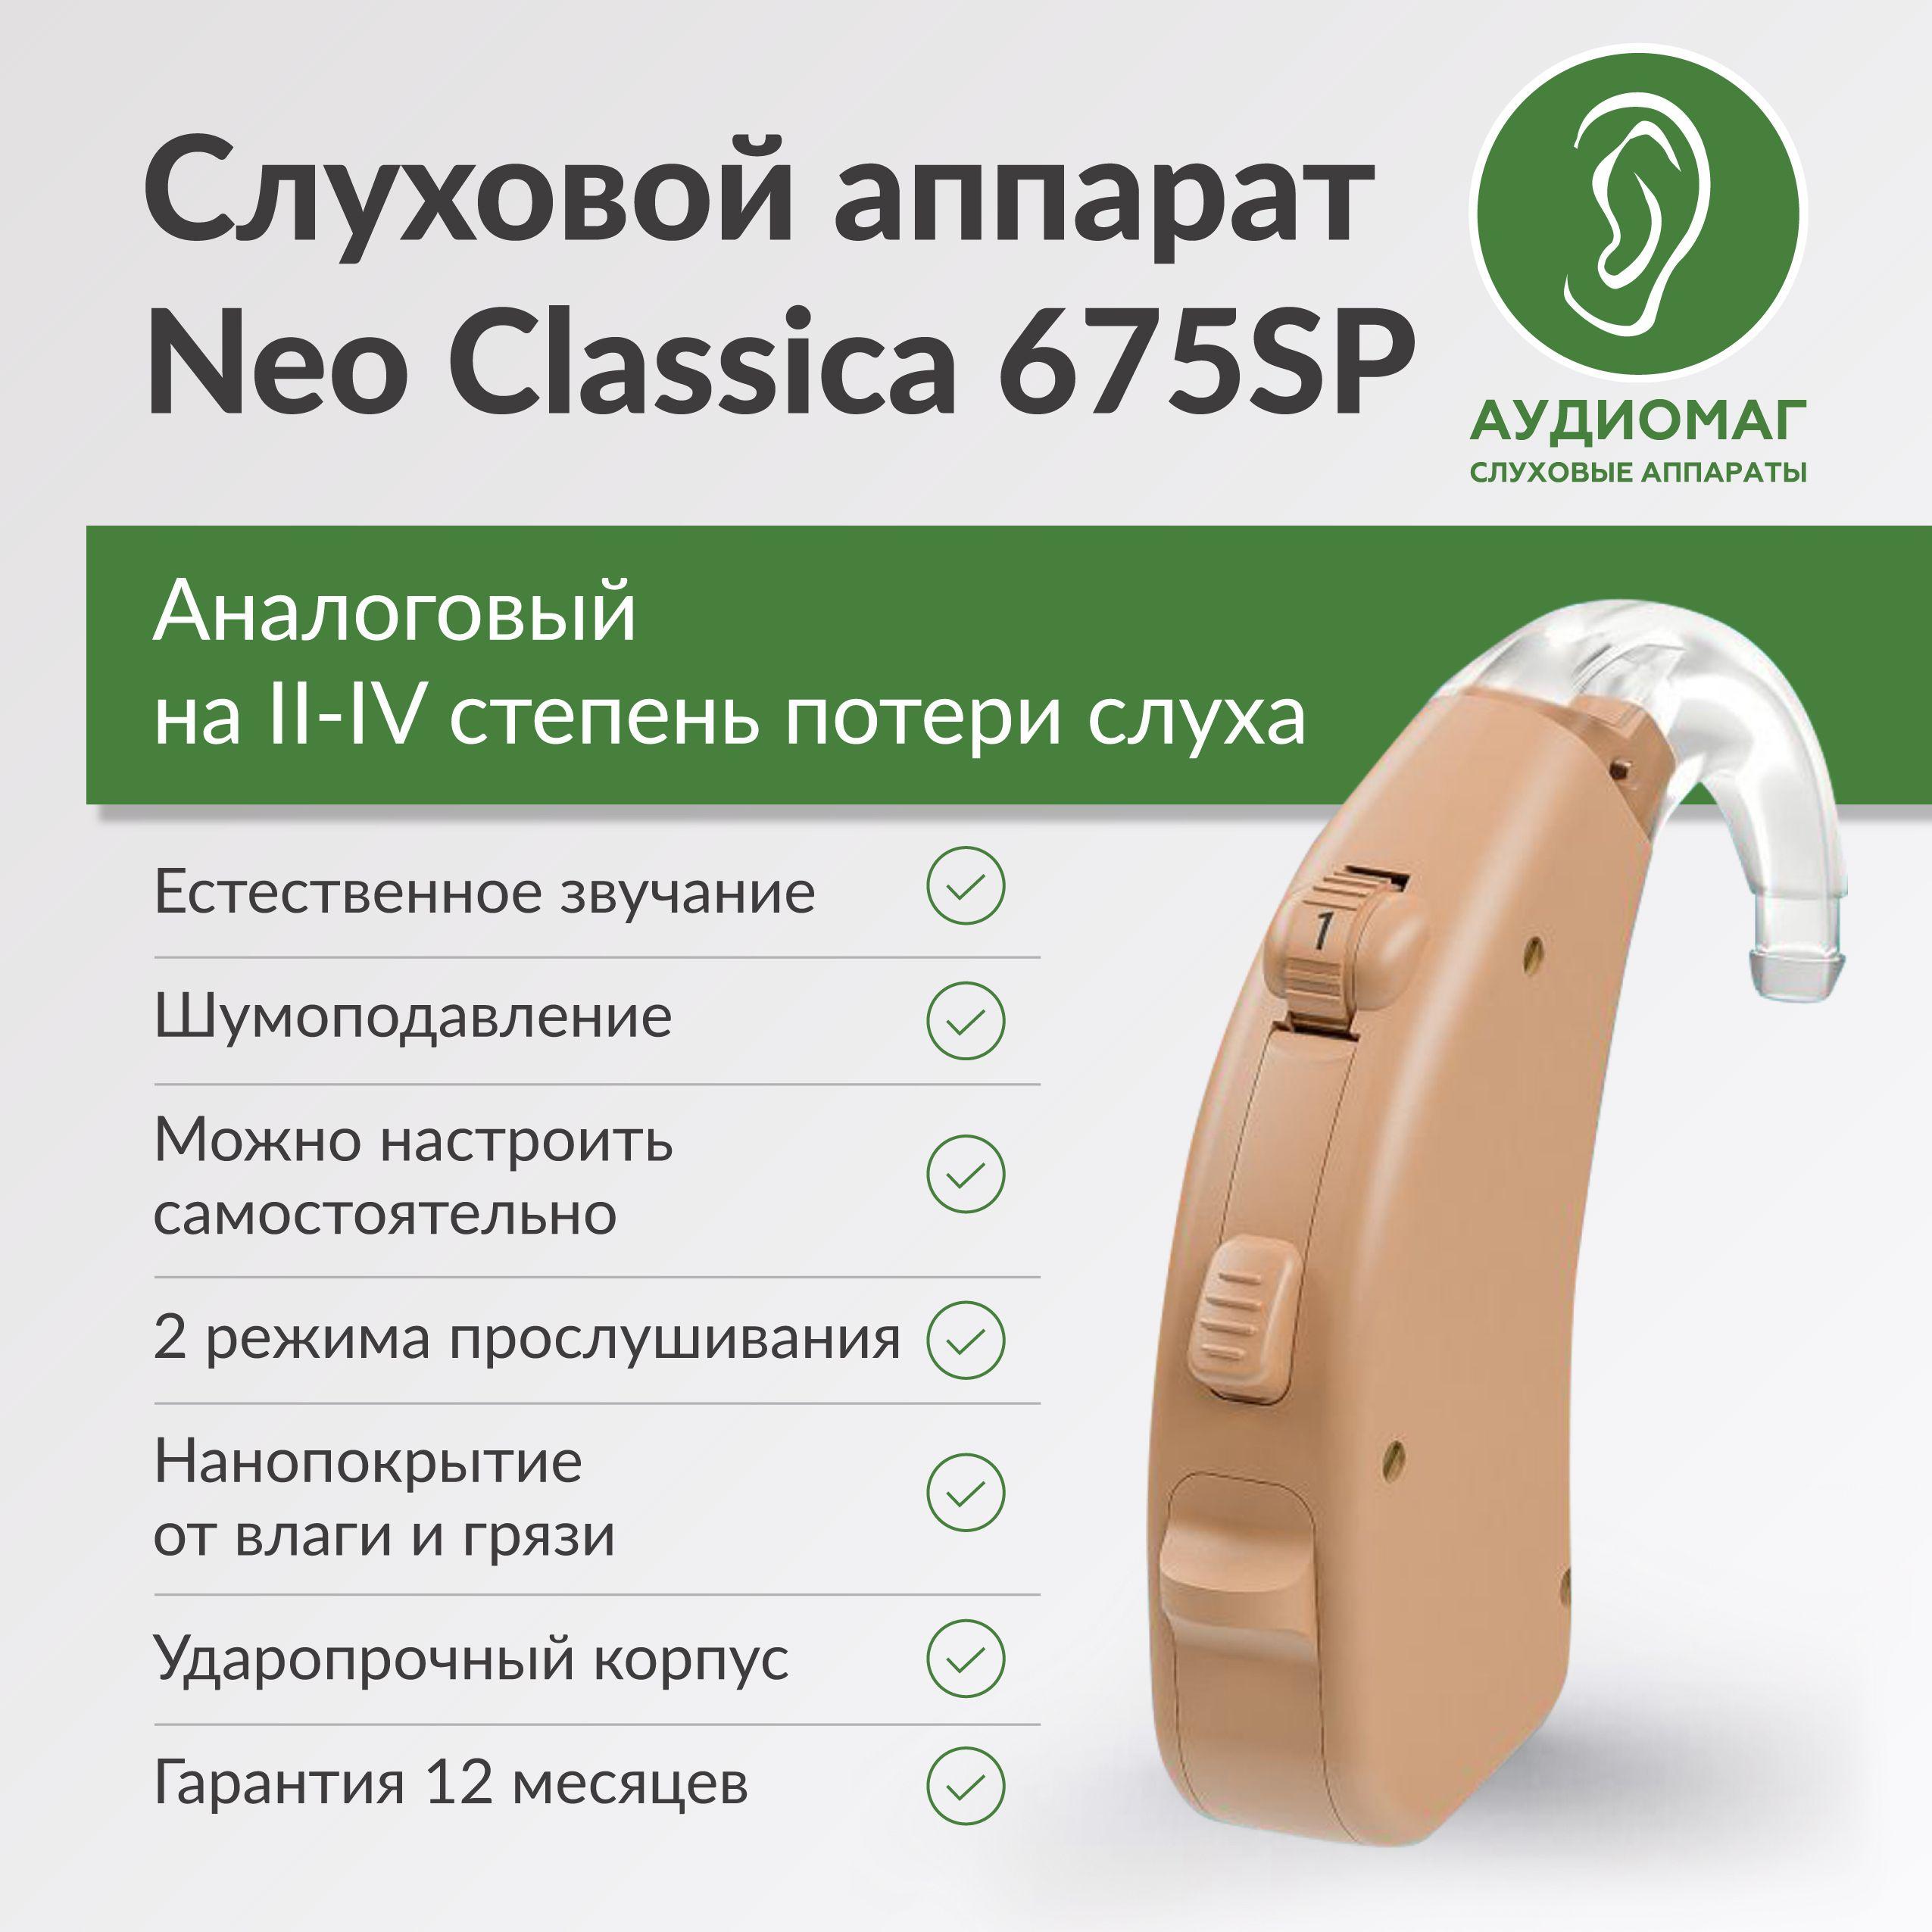 Слуховой аппарат для пожилых и взрослых людей мощный AURICA Аурика Neo Classica 675SP для 3-4 степени потери слуха